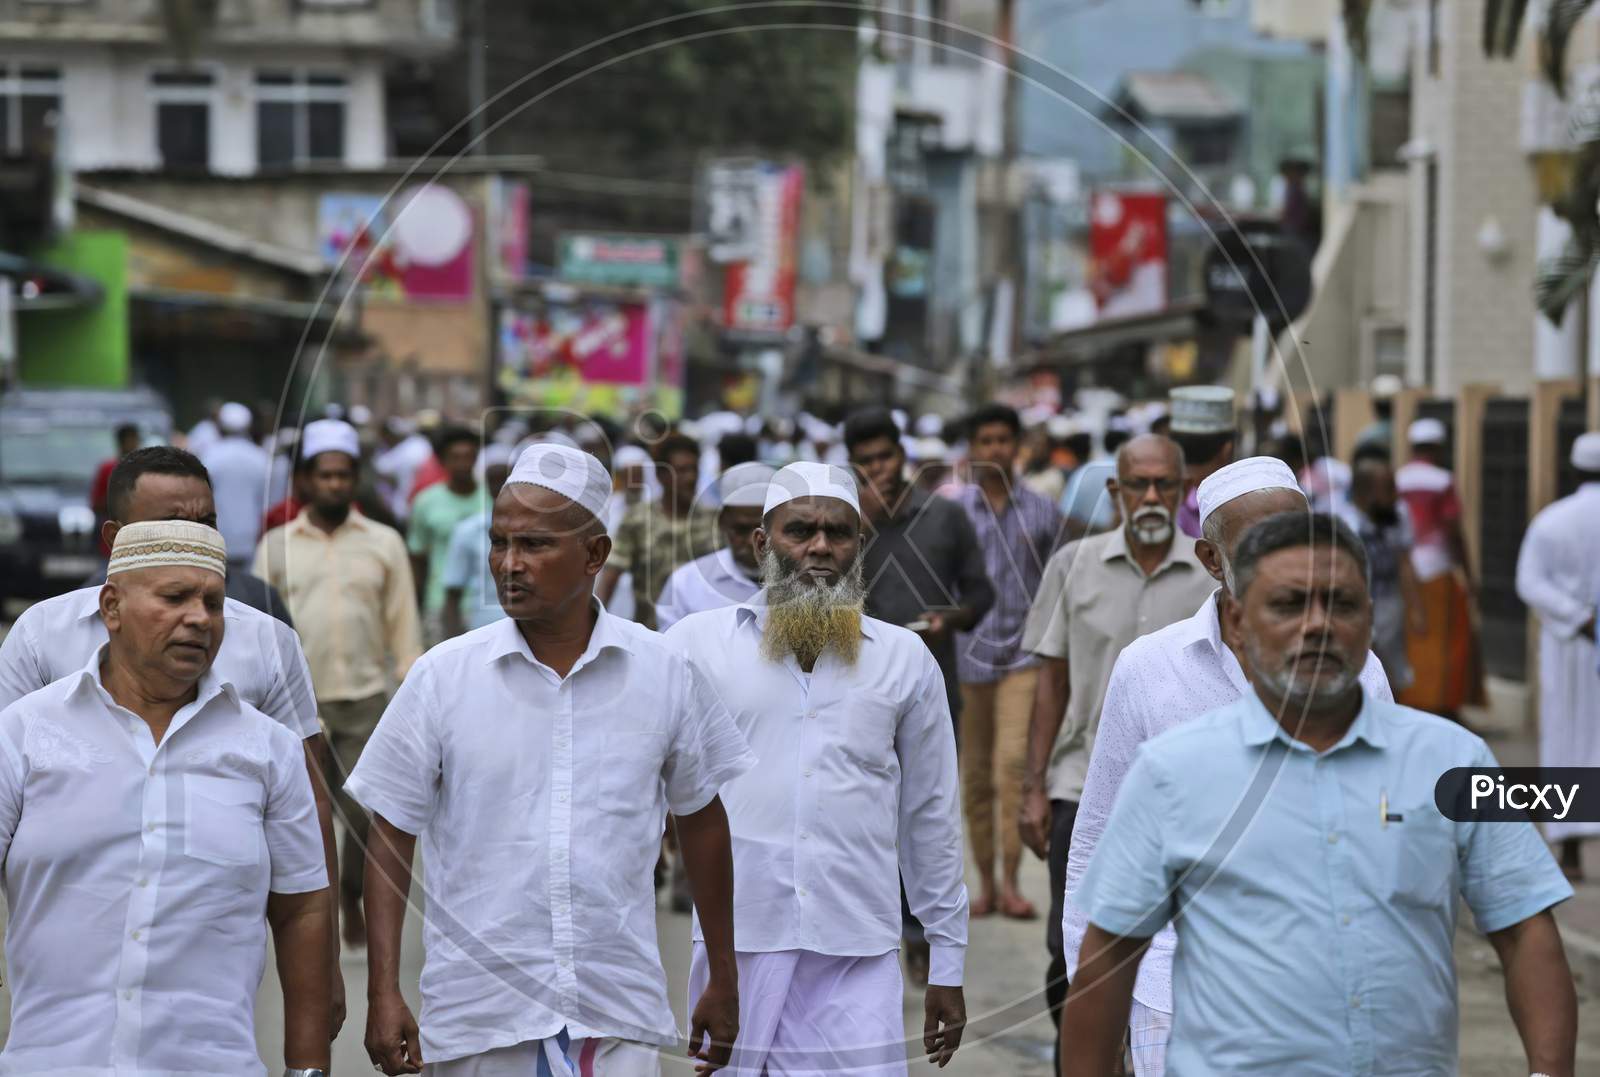 Muslim people crowd in the street of Bangladesh.